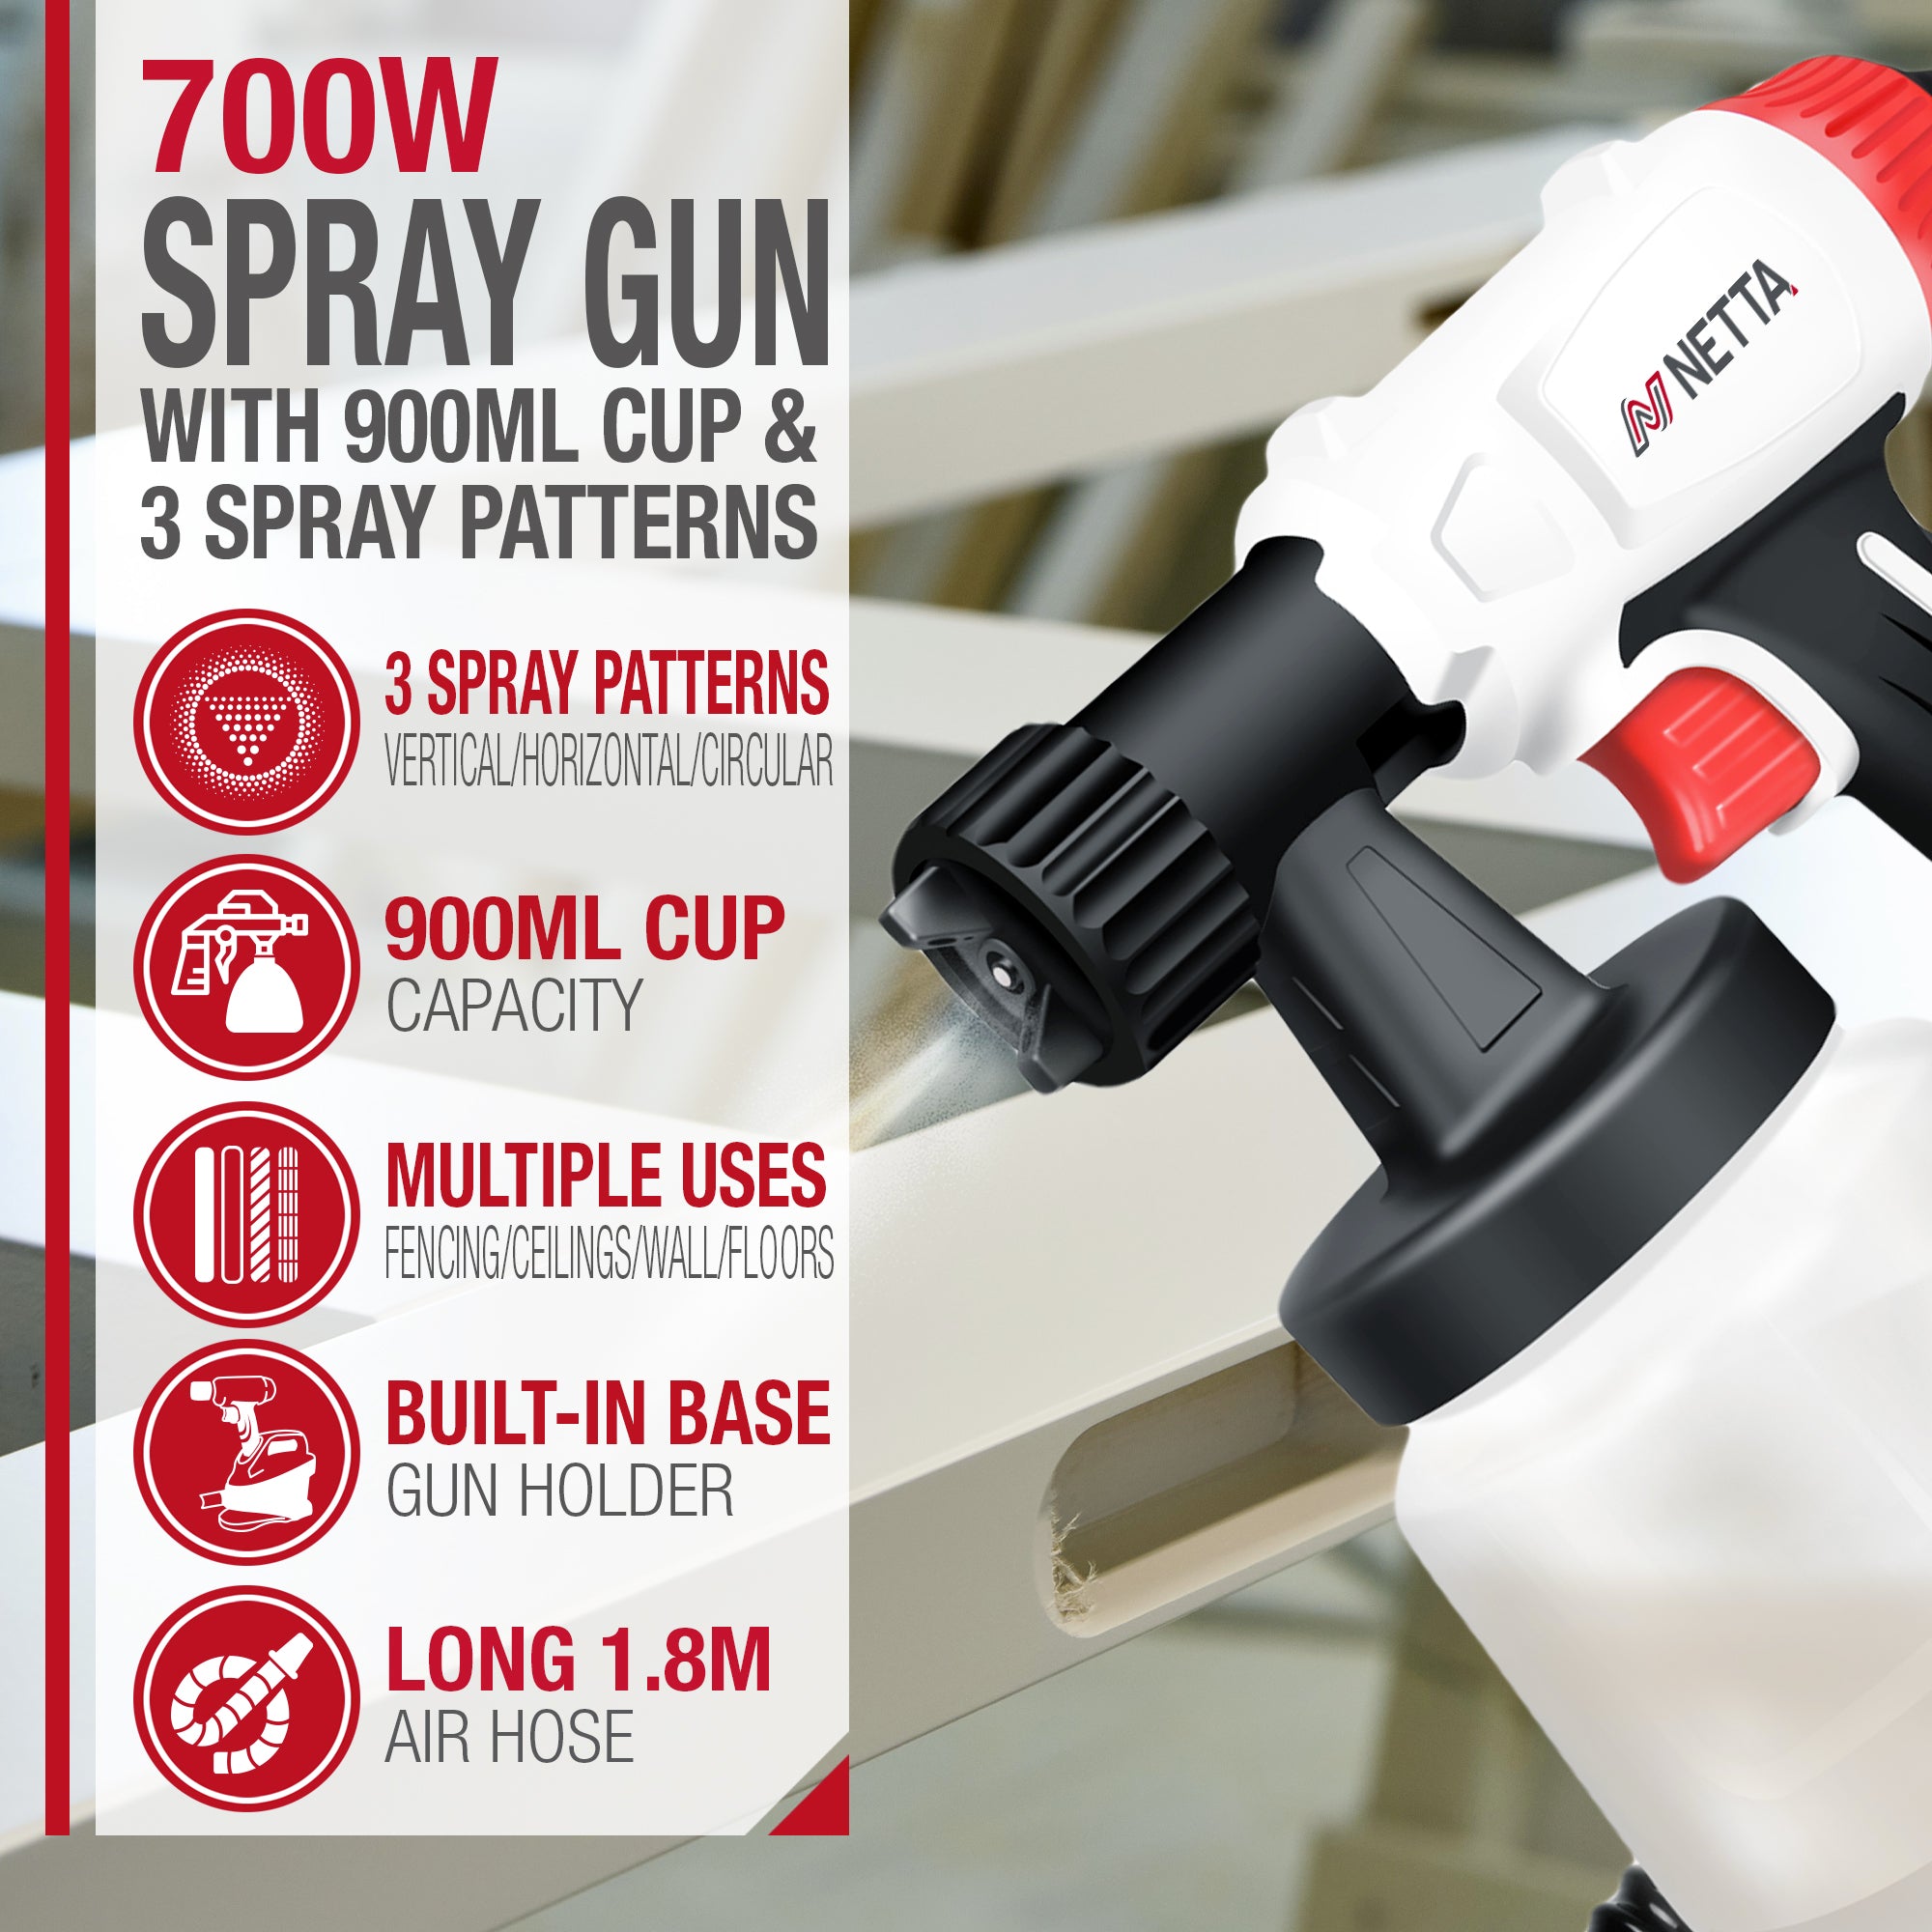 NETTA 700W Paint Spray Gun with Stand - 900ml Capacity